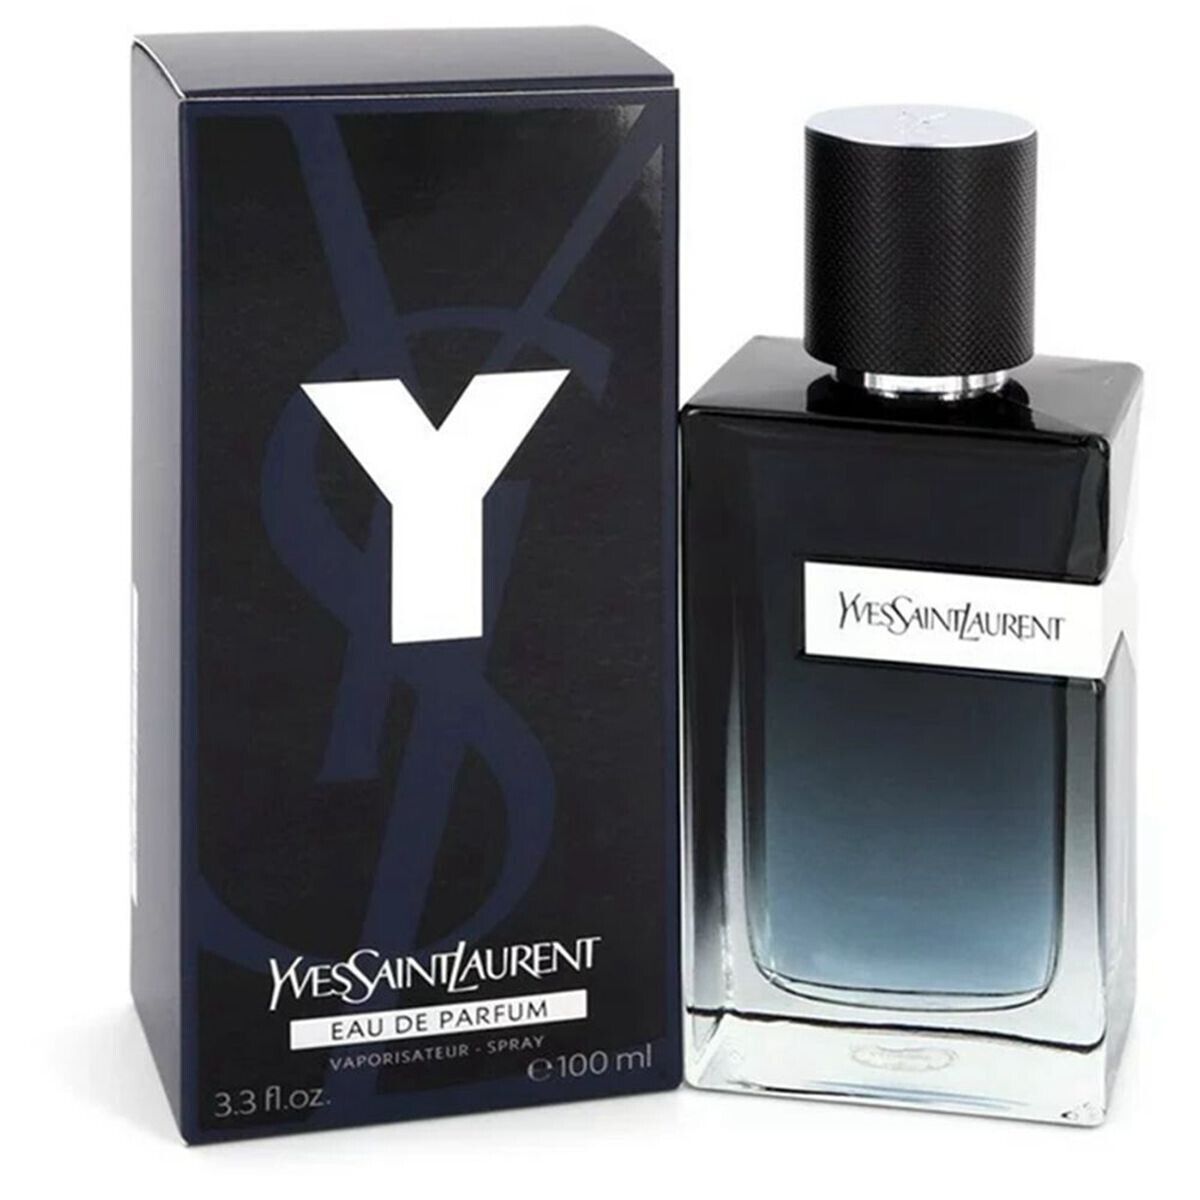 New Y Eau de Parfum Spray Yves Saint Laurent EDP 3.3 Oz Perfume for Men SEALED